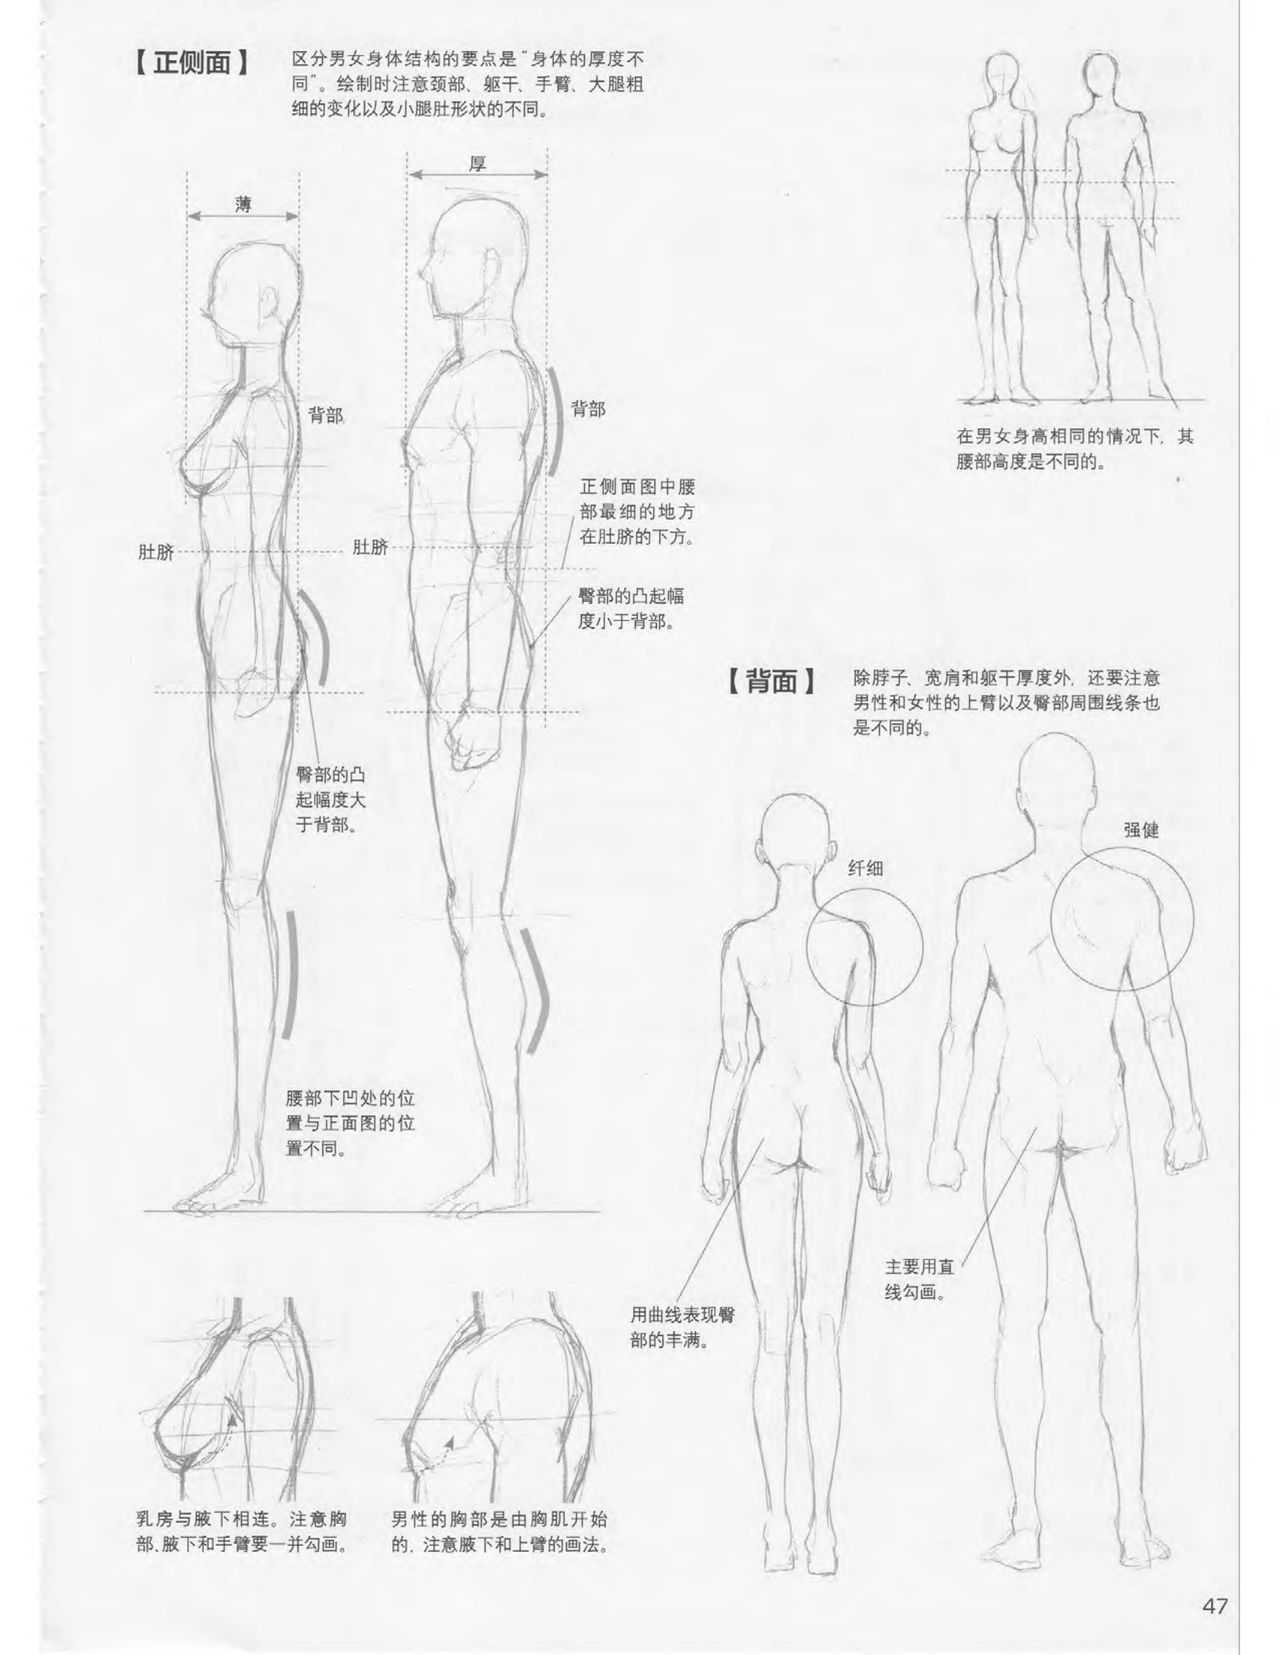 Japanese Manga Master Lecture 3: Lin Akira and Kakumaru Maru Talk About Glamorous Character Modeling 47